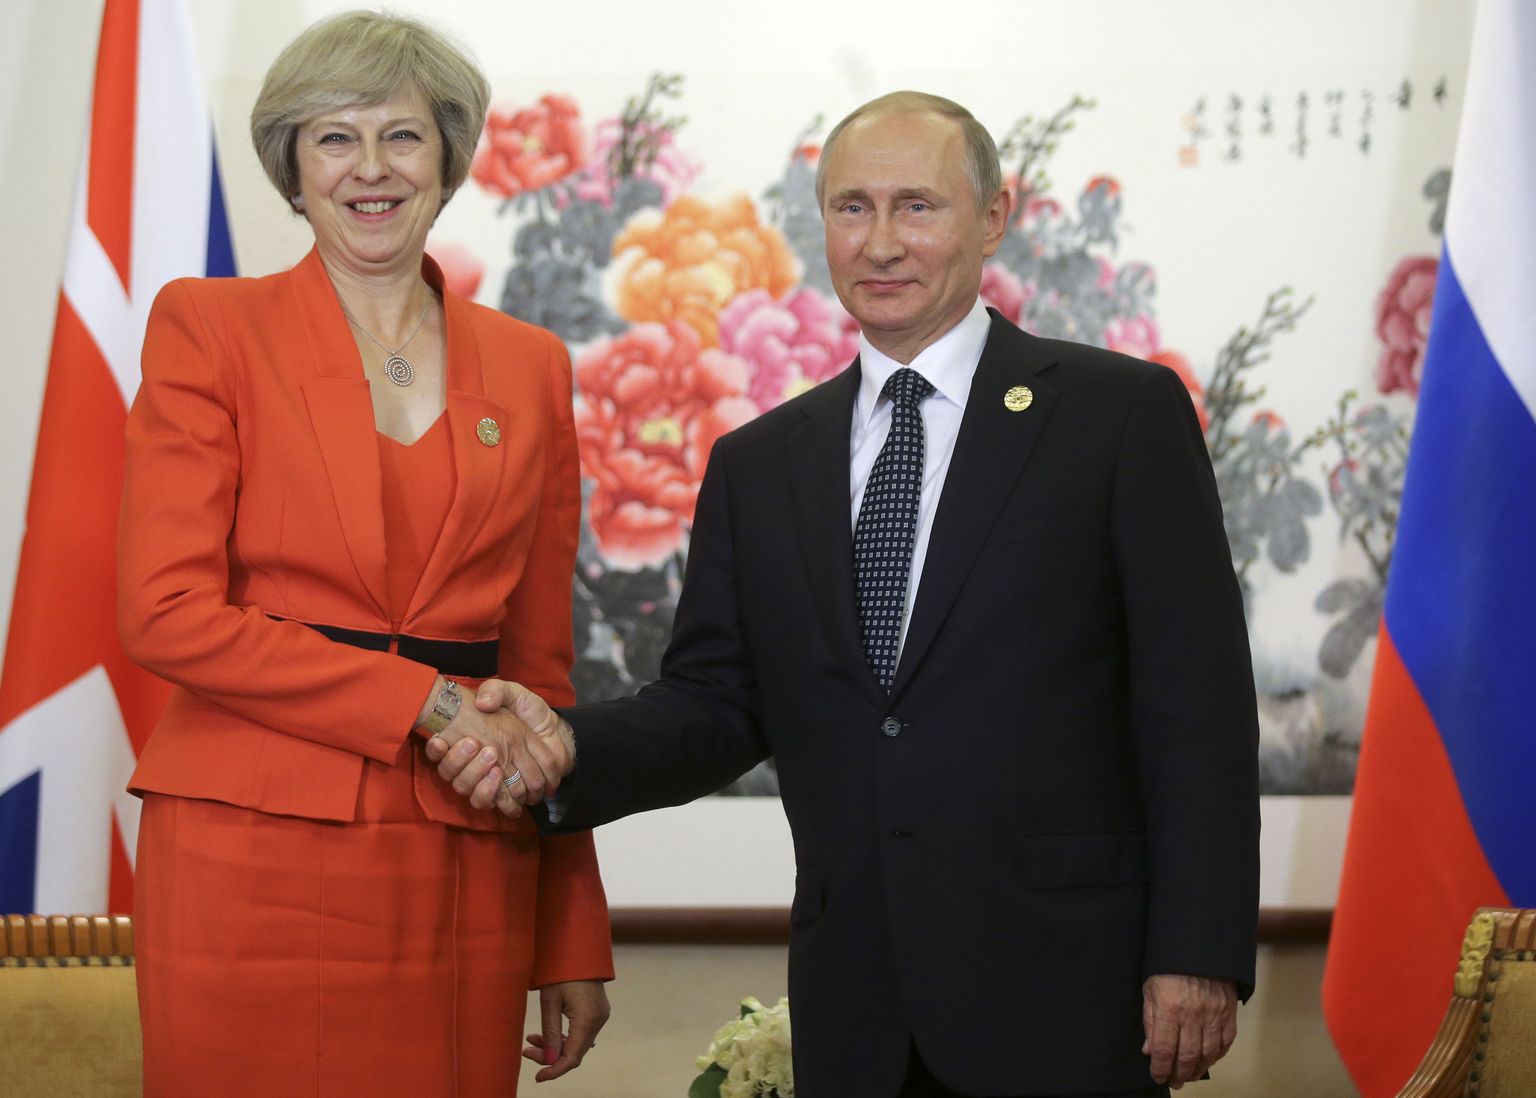 Venemaa president Vladimir Putin ja Briti peaminister Theresa May esimesel kohtumisel Hiinas.